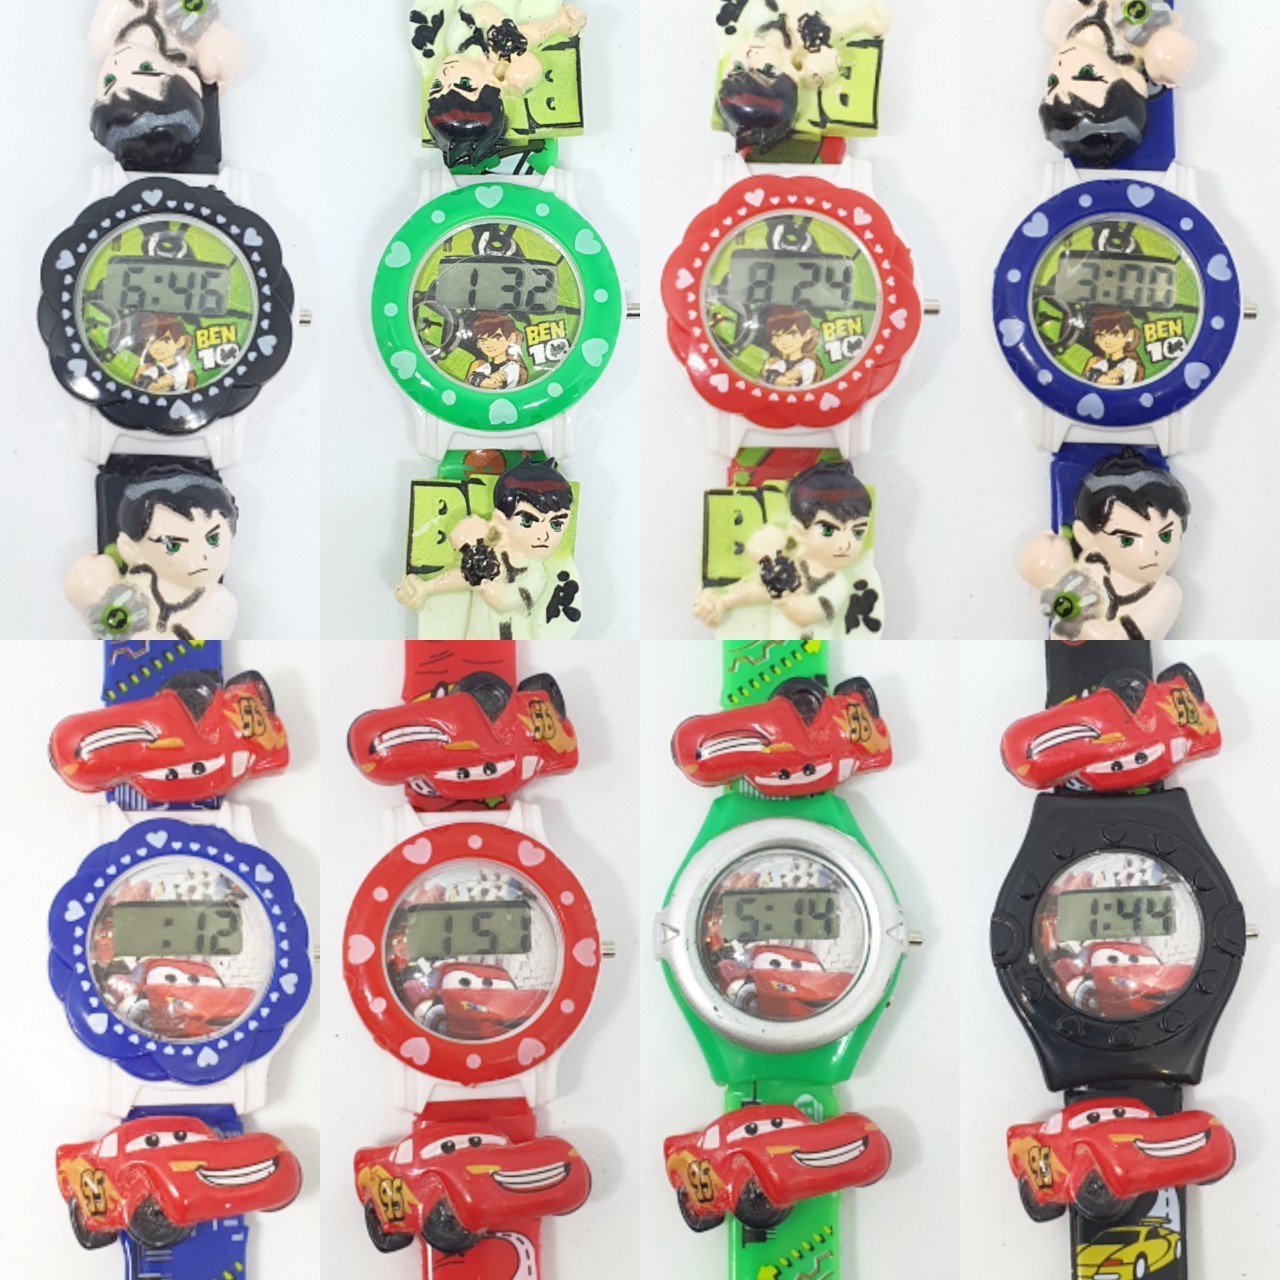 รูปภาพรายละเอียดของ (พร้อมส่ง)นาฬิกาเด็ก ลายการ์ตูน นาฬิกาดช ระบบ ดิจิตอล นาฬิกาเด็กผู้ชาย ลายเบ็นเท็น คาร์  4 สี สีสันสดใส นาฬิกาเด็กเล็ก RC030-1